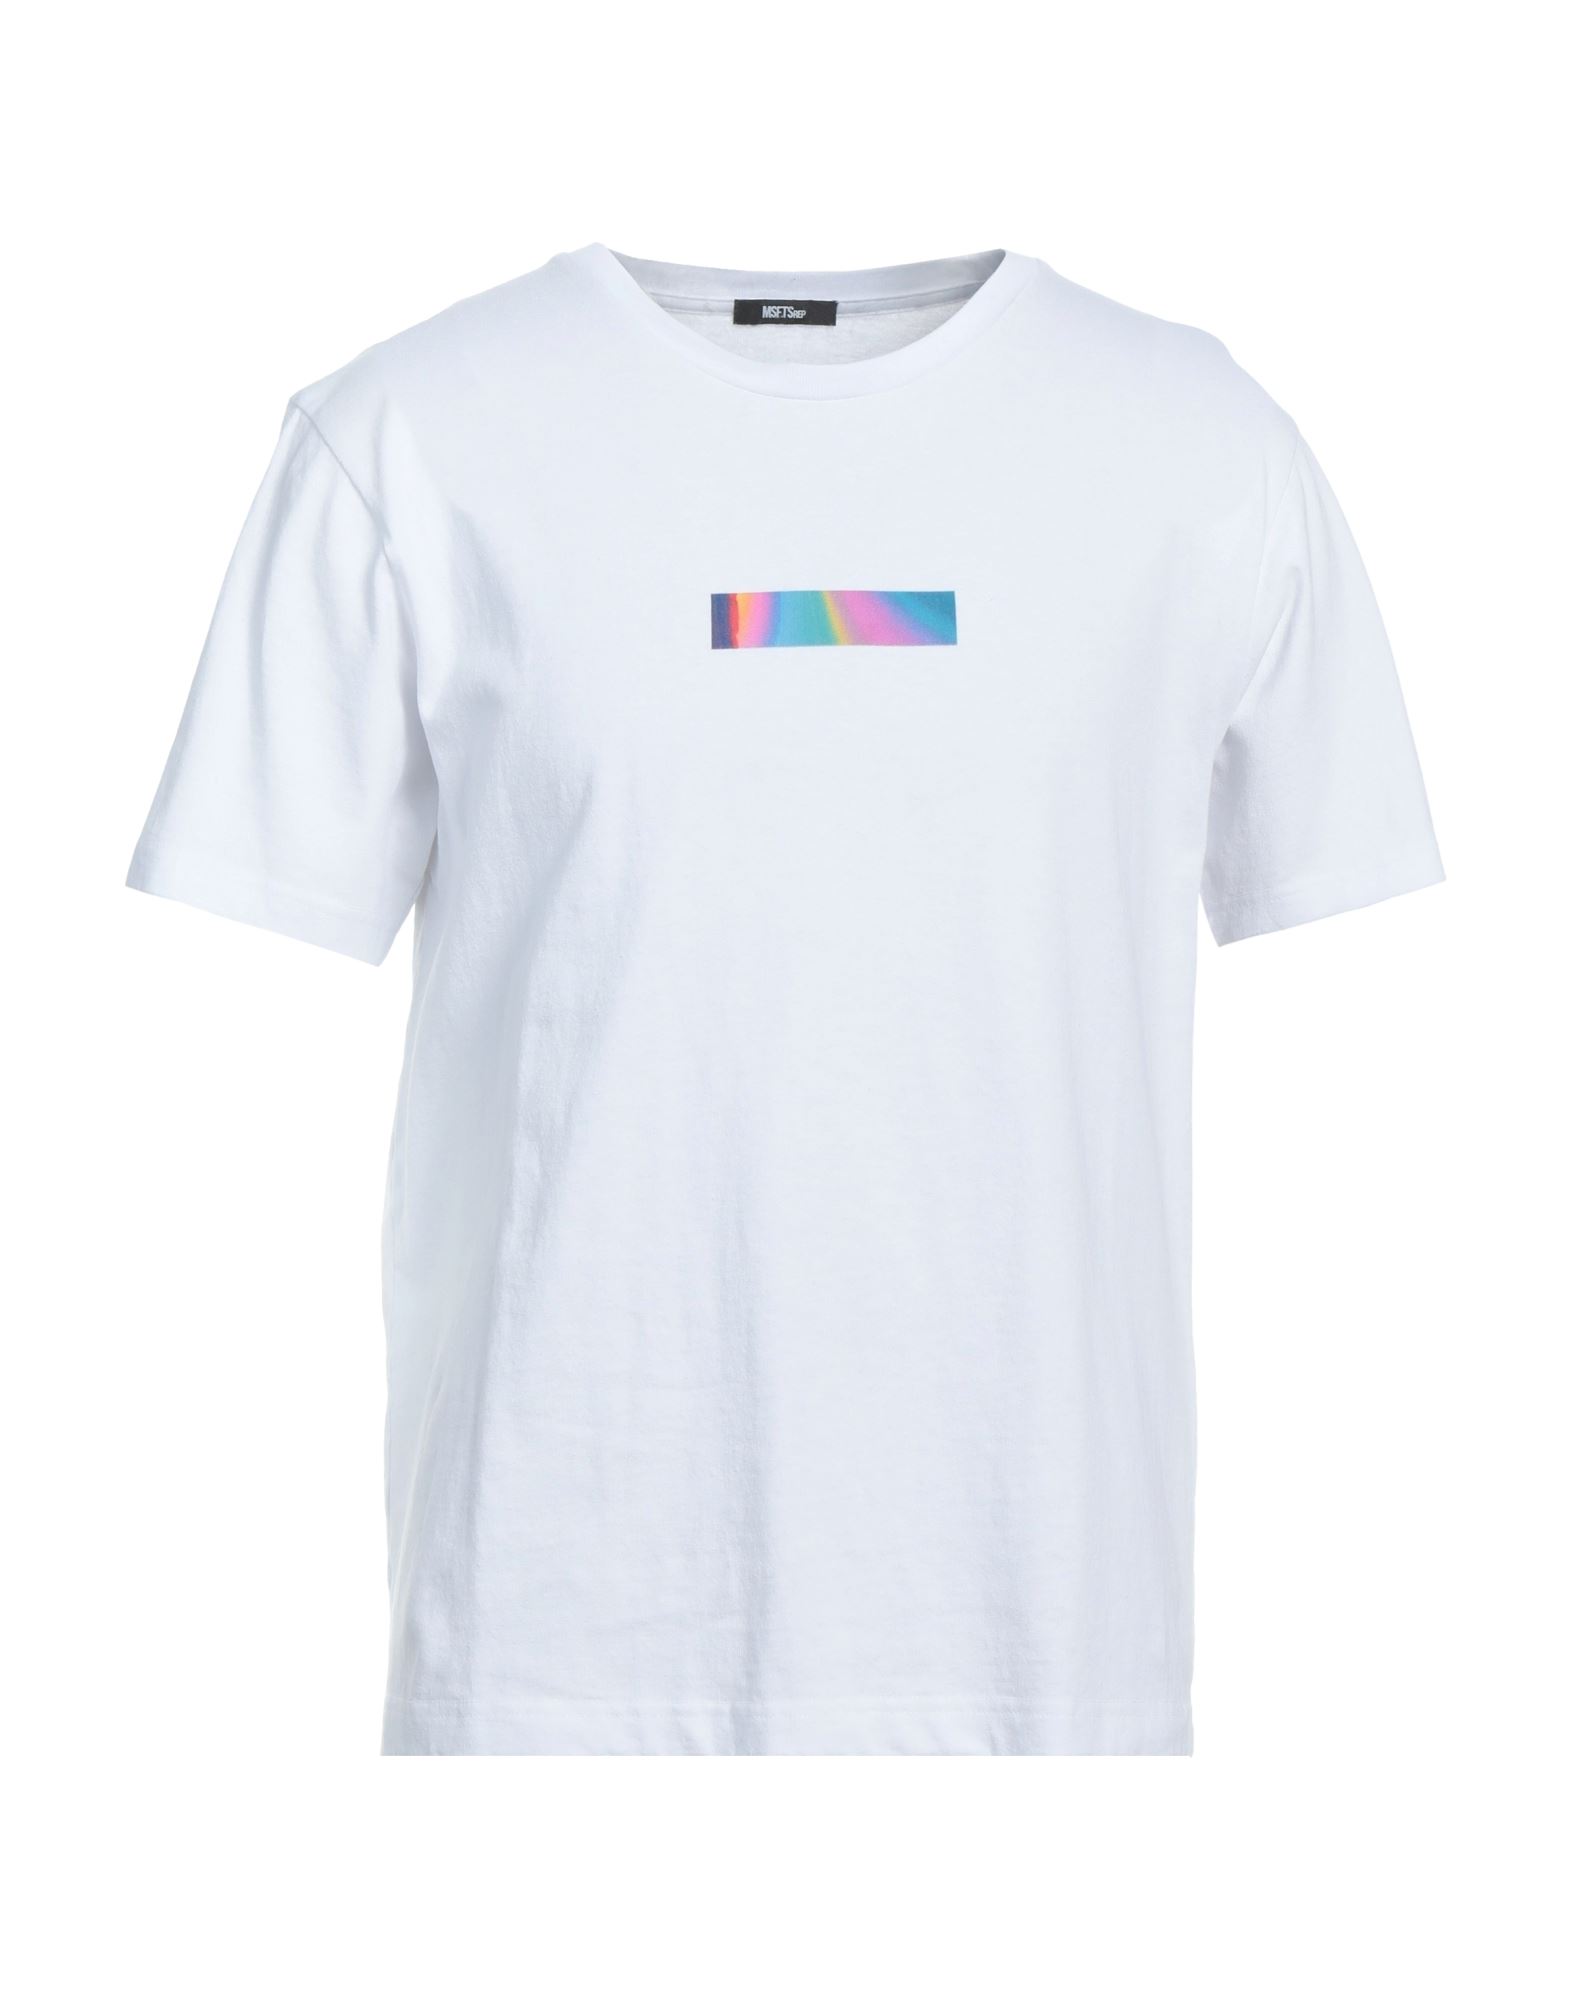 Shop Msftsrep Man T-shirt White Size Xl Cotton